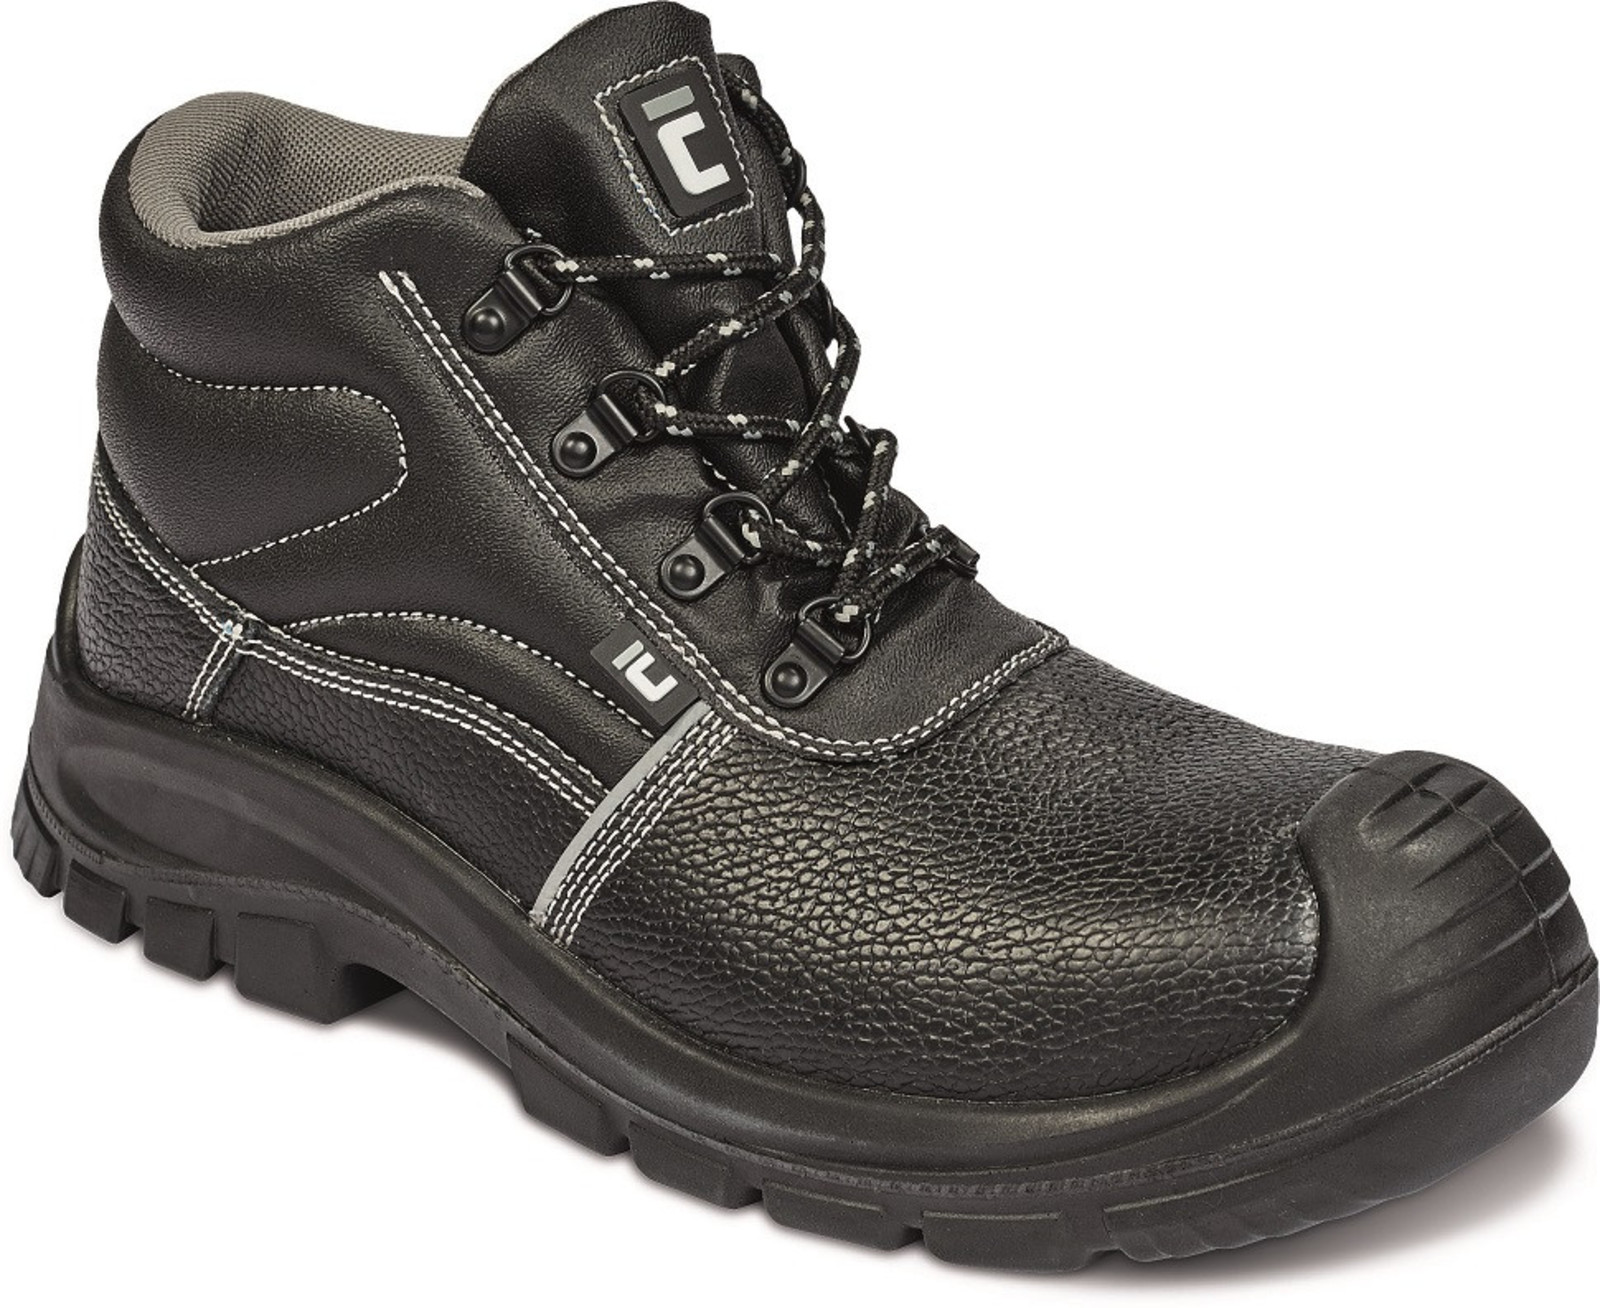 Bezpečnostná obuv Raven XT S3 Metal Free - veľkosť: 46, farba: čierna